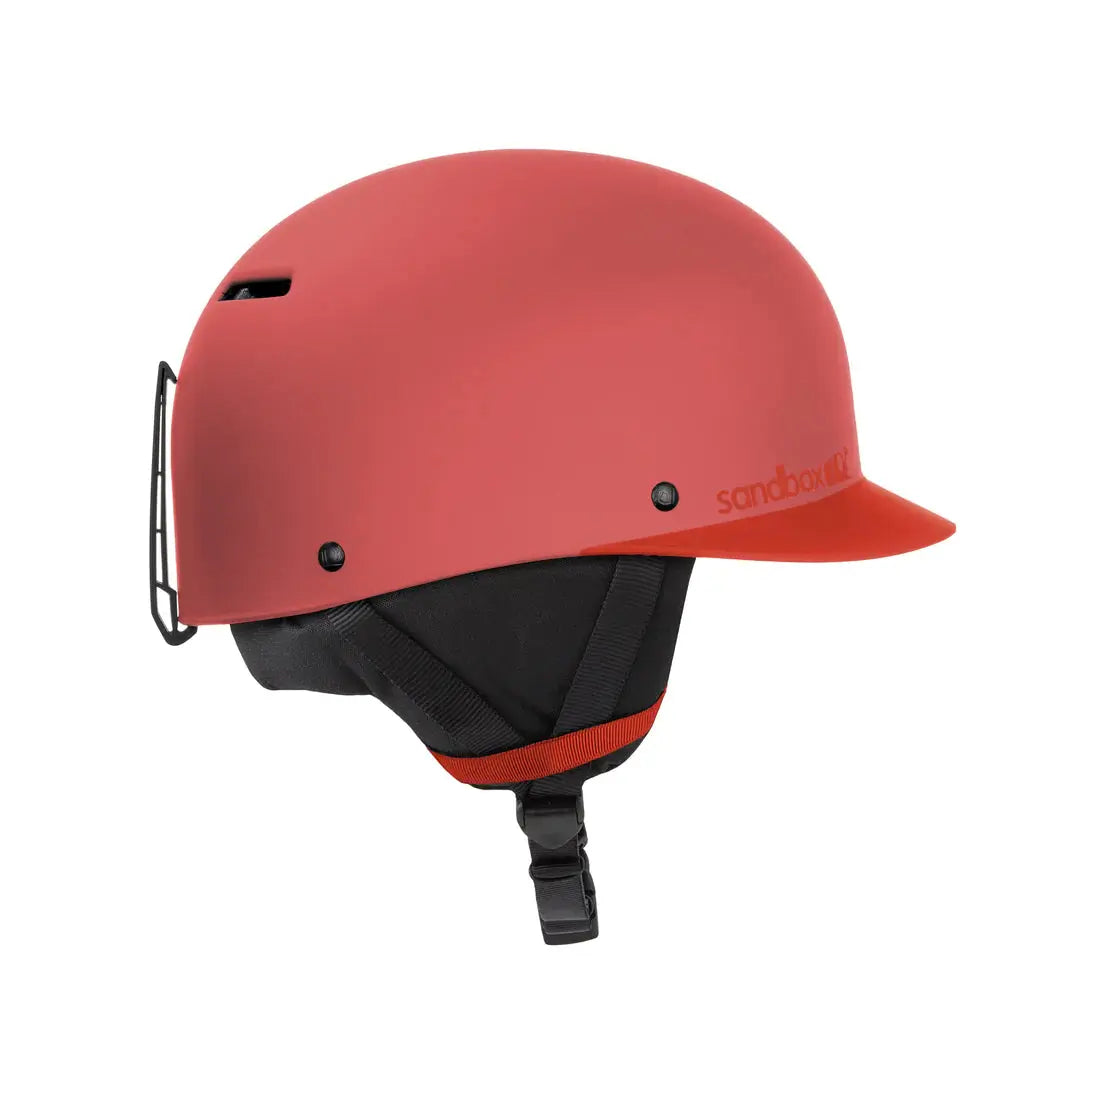 Sandbox Classic 2.0 Snow Helmet - Vermilion SANDBOX